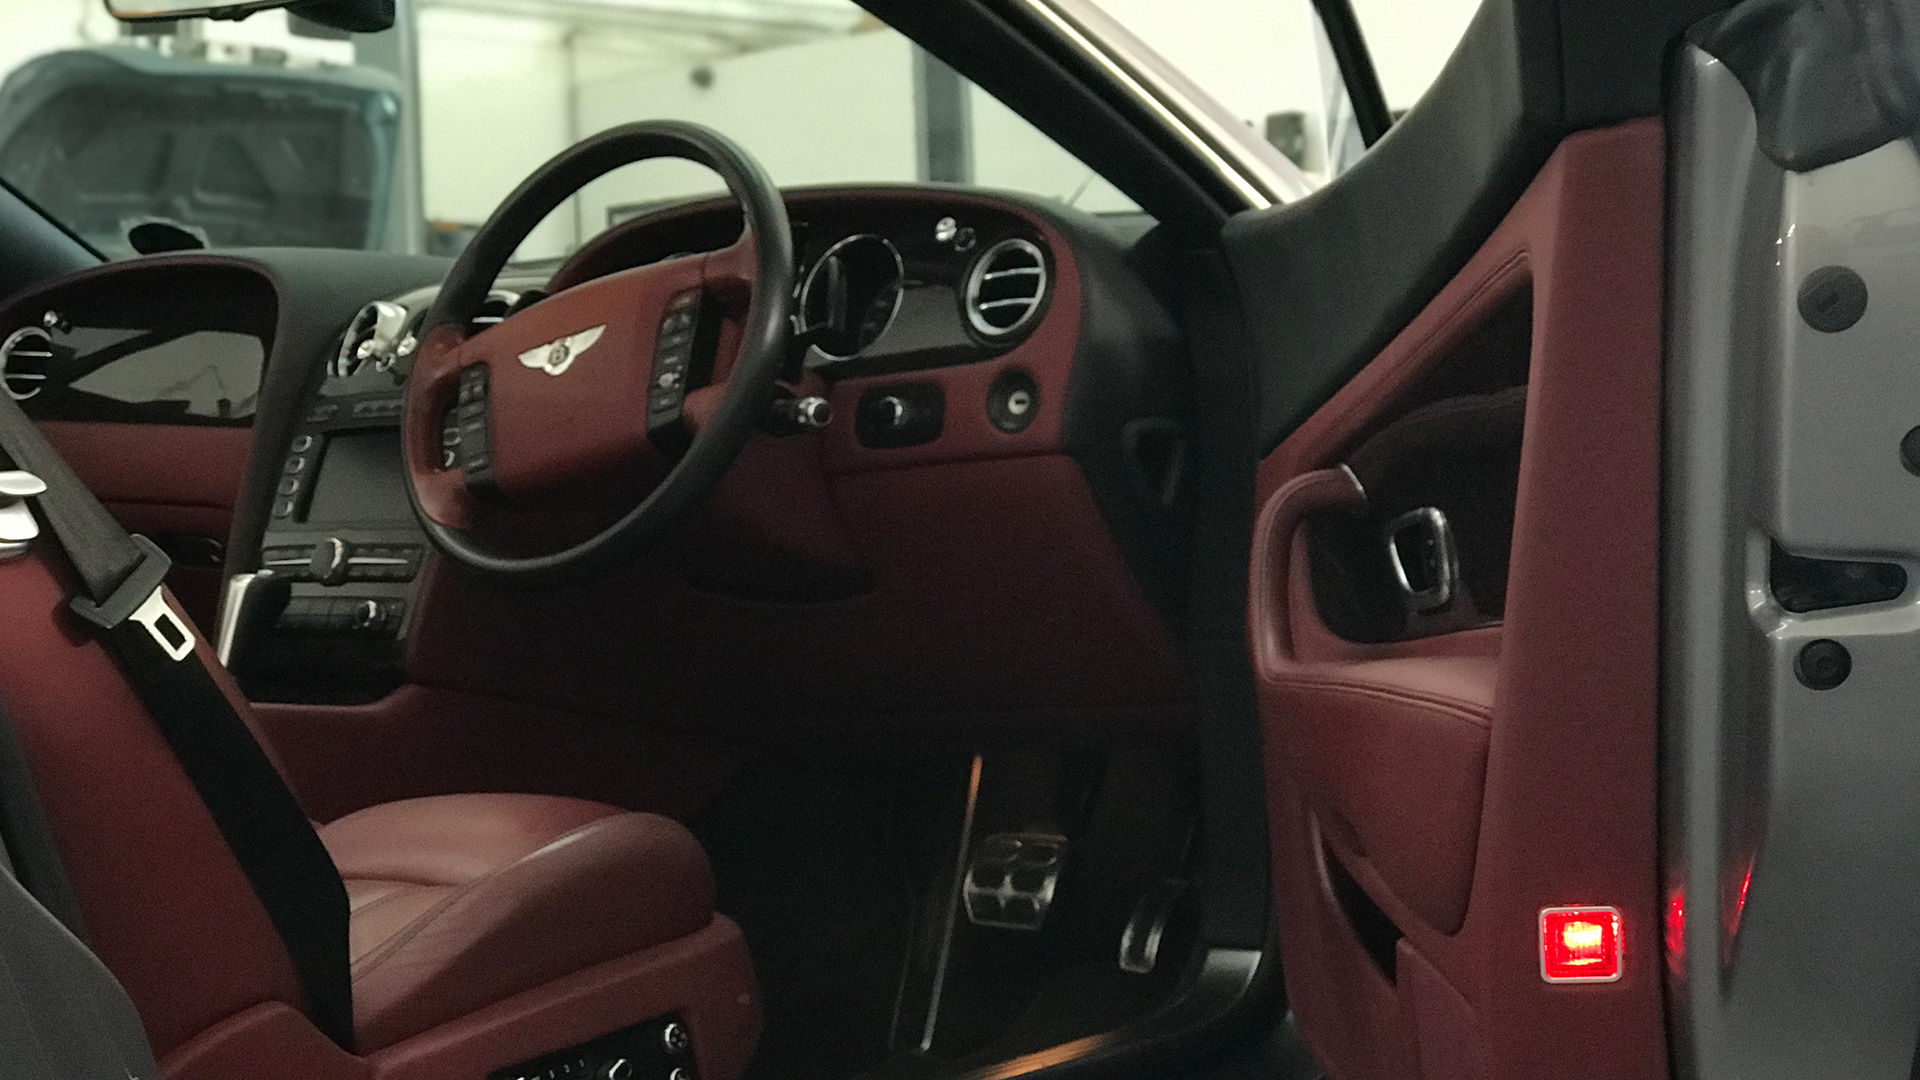 Prasads Automotive Bentley GTC